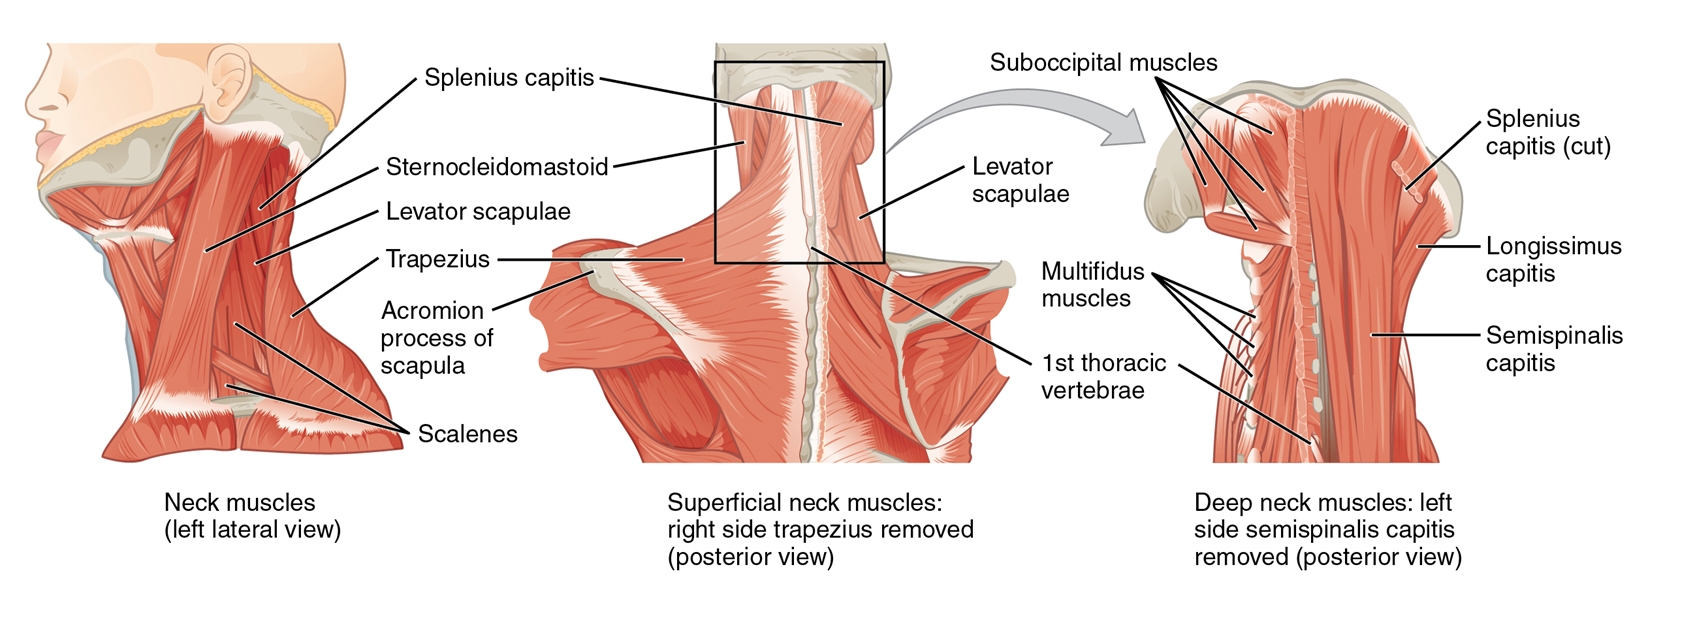 Figure 1: Cervical musculature